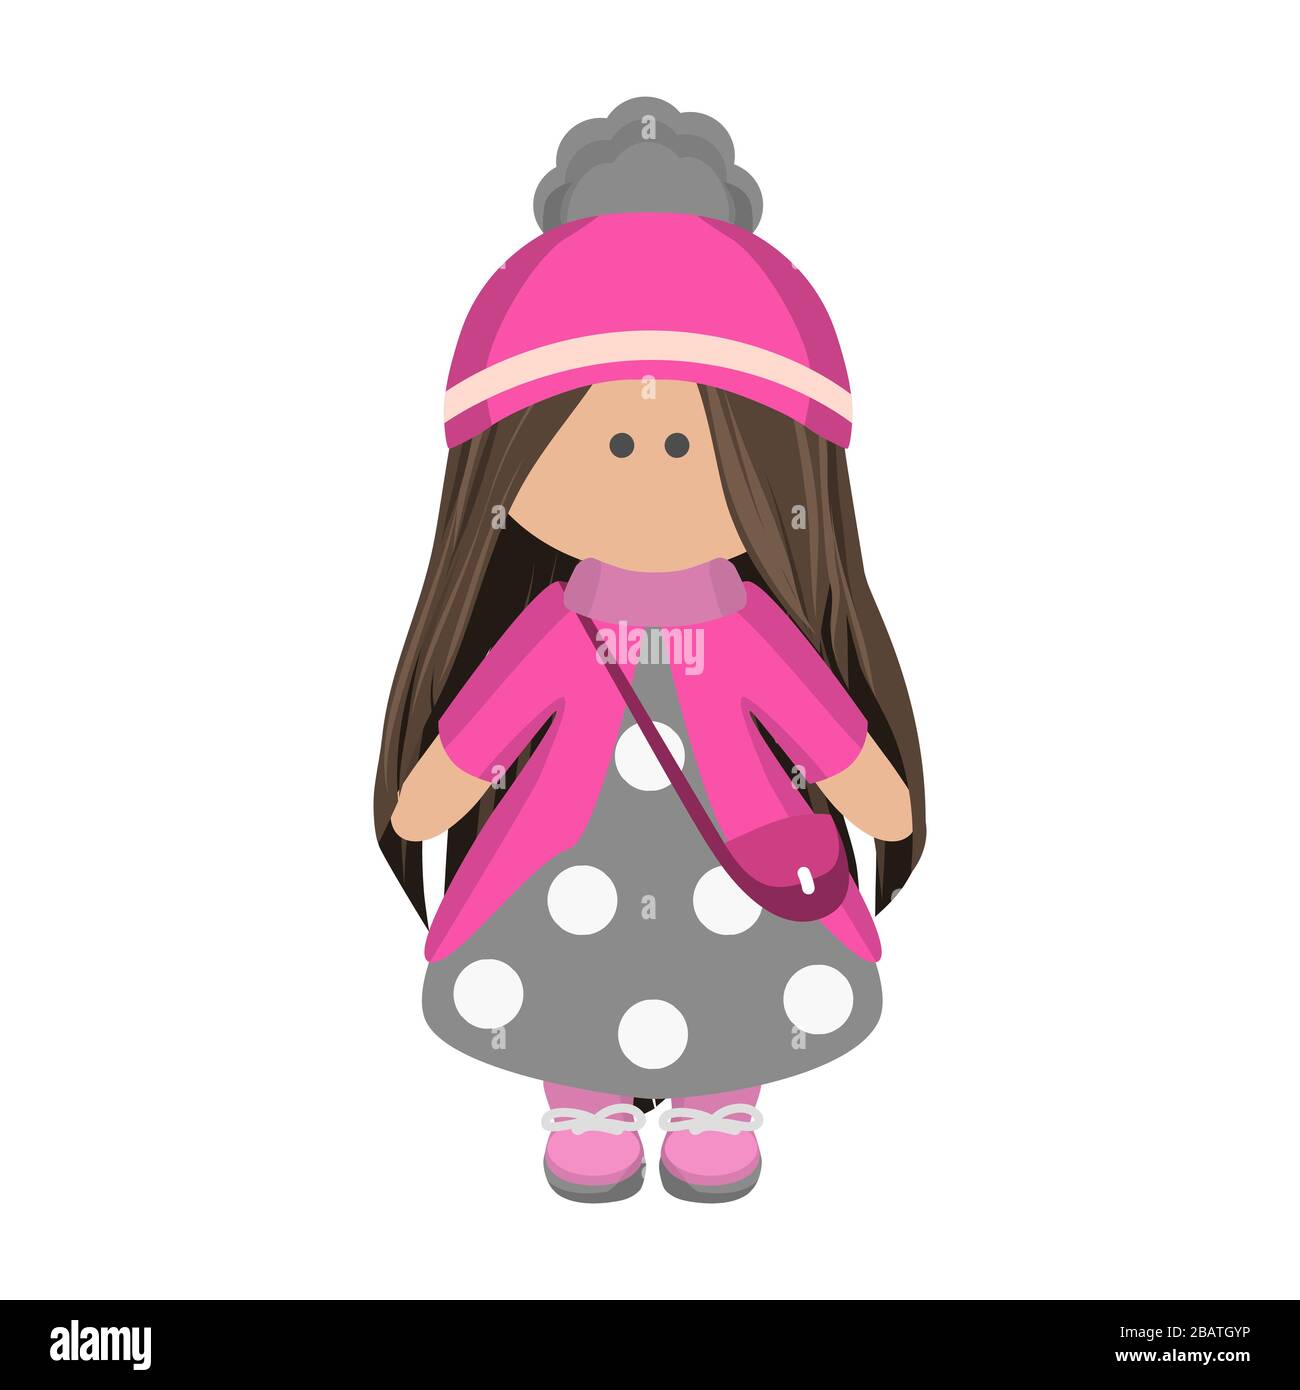 Jolie poupée fille avec cheveux longs brunette dans un chapeau rose tricoté et un sac à main en robe grise à pois. Poupée de personnage de dessin animé pour enfants Illustration de Vecteur